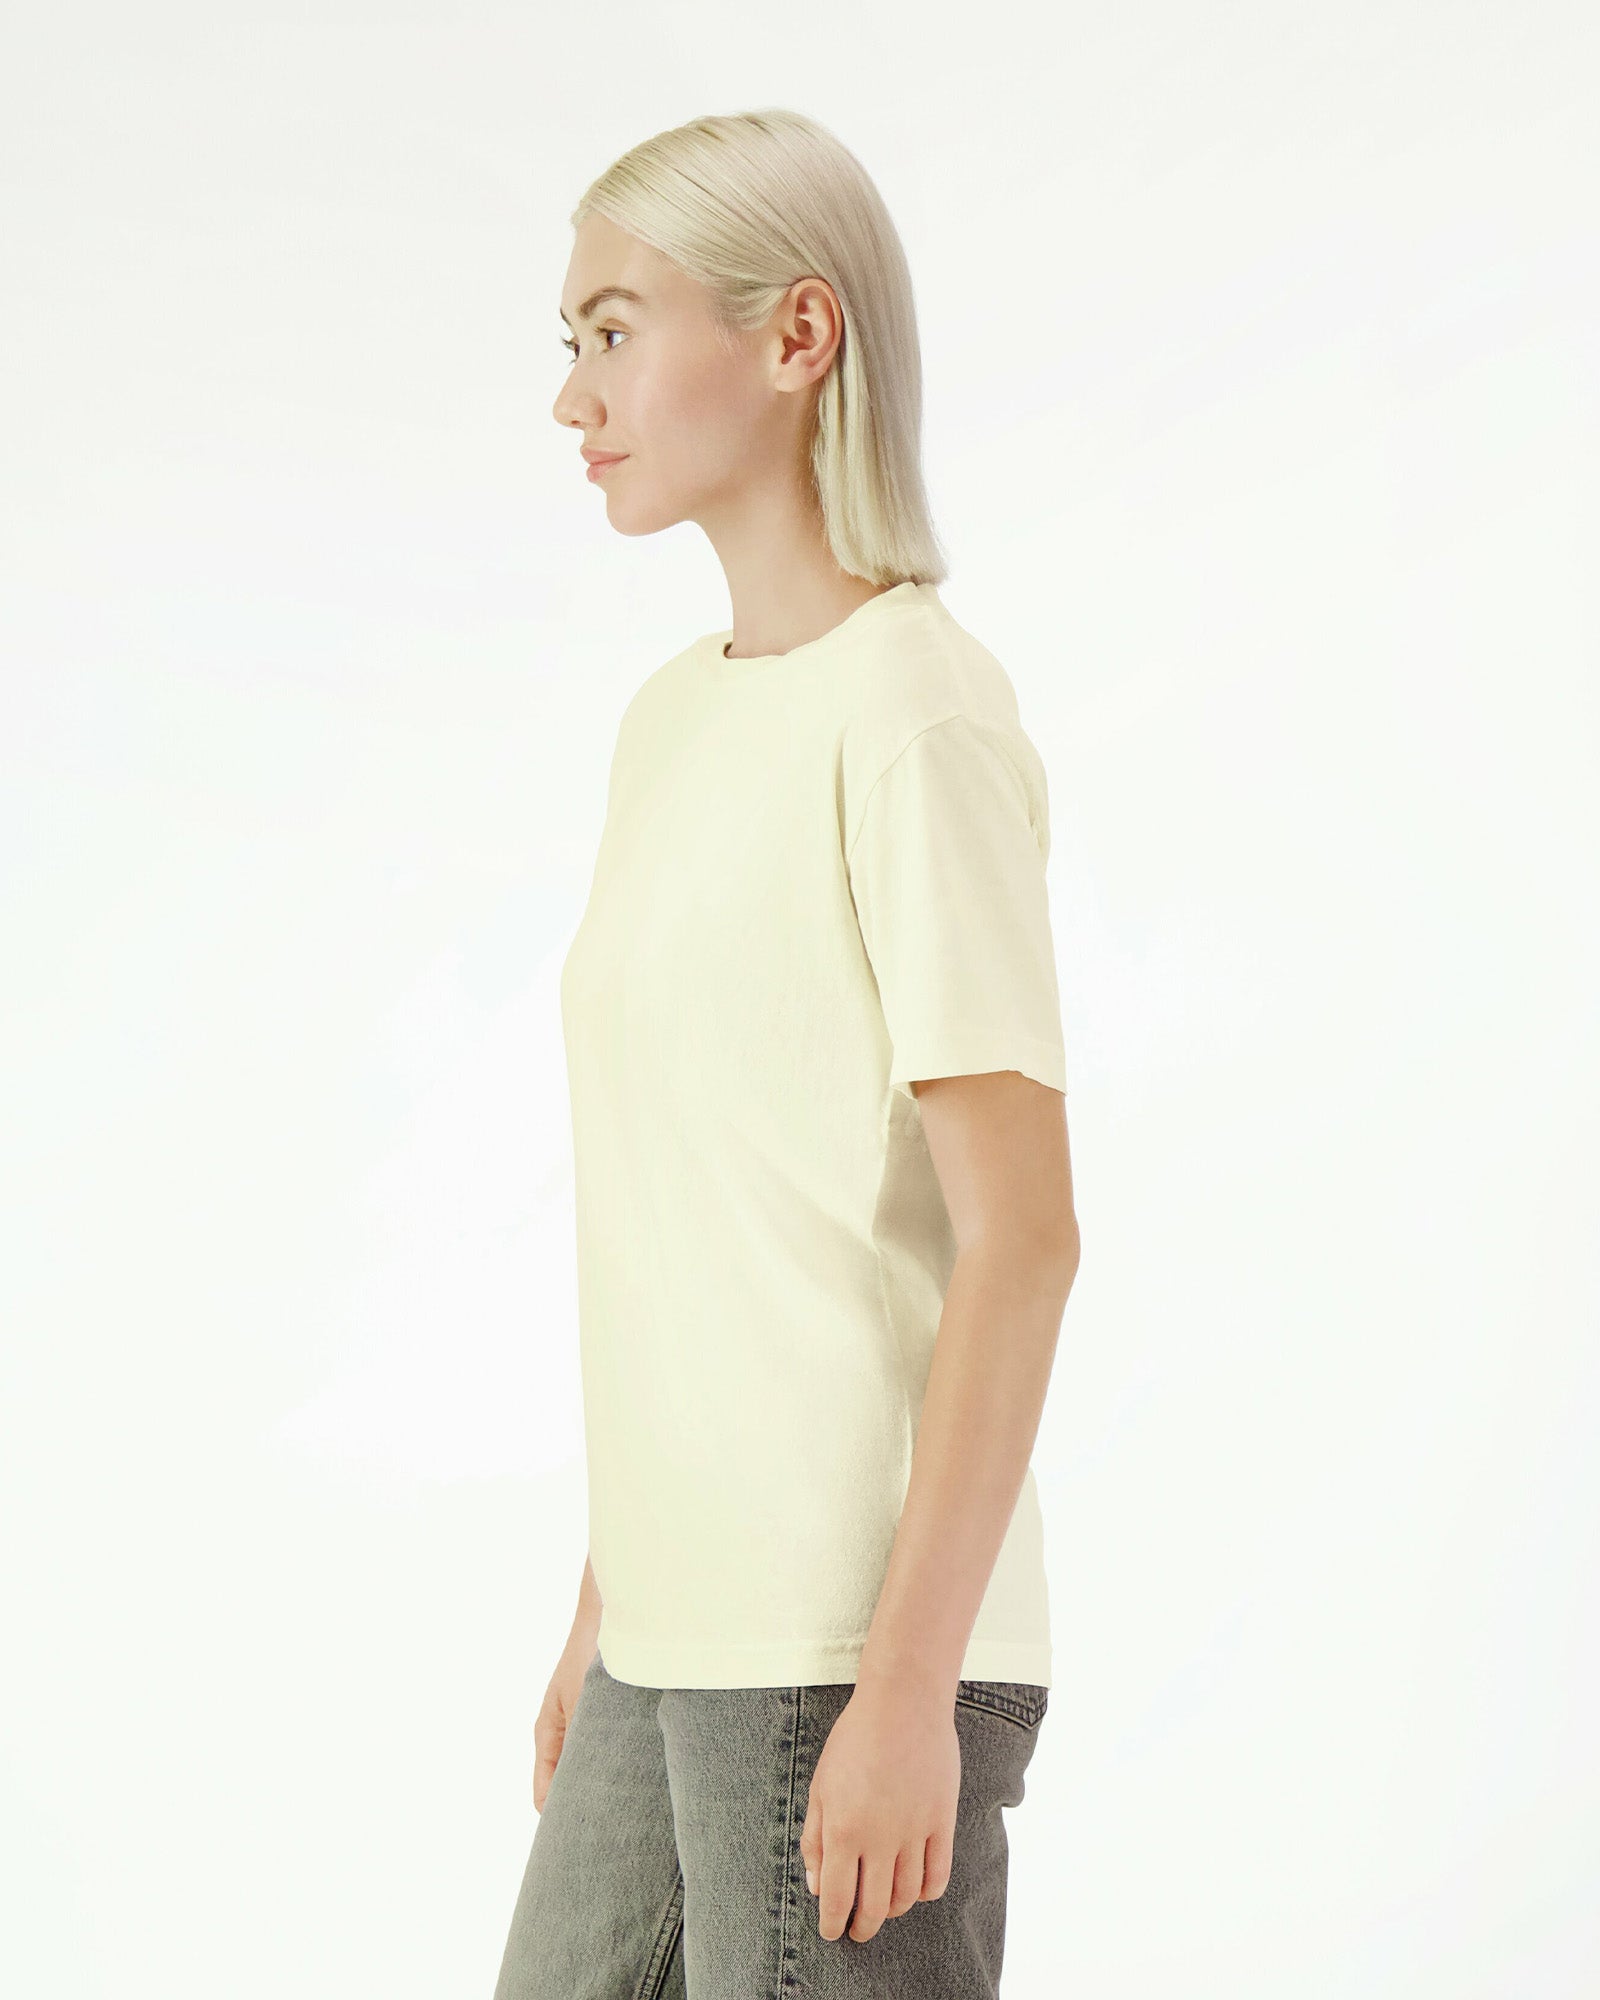 Garment Dyed Heavyweight Unisex  T-Shirt